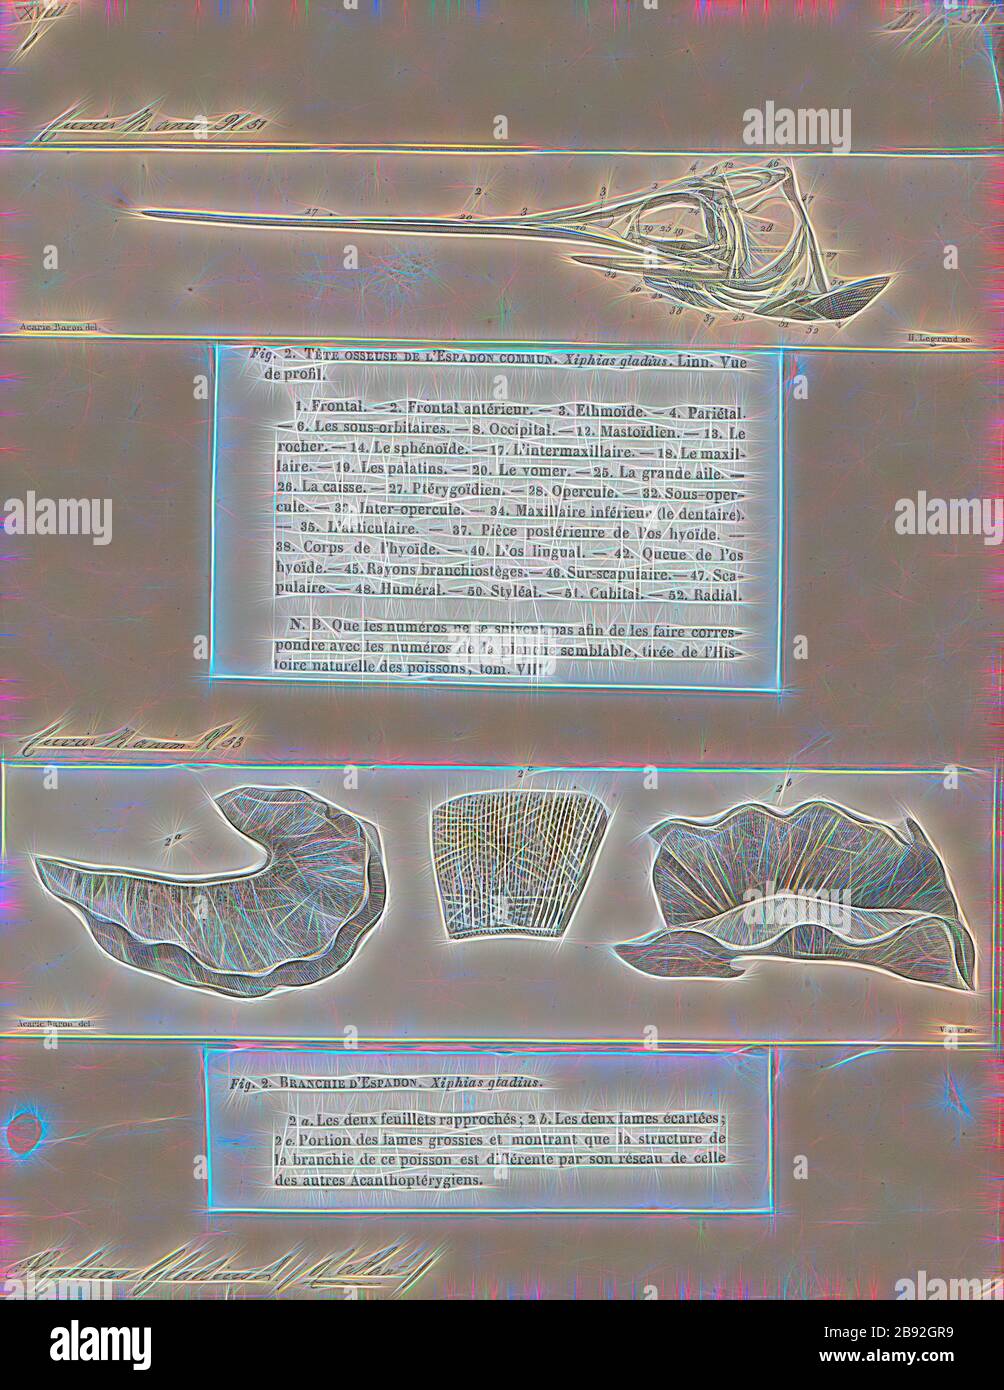 Xiphias gladius, Stampa, Pesce spada (Xiphias gladius), noto anche come broadbills in alcuni paesi, sono grandi, altamente migratorie, pesci predatori caratterizzato da una lunga e piatta, ha sottolineato bill. Essi sono uno sport popolare e di un pesce del billfish categoria, benchè sfuggente. Pesce spada sono allungate, rotondi e corposi e perdere tutti i denti e le scale di età adulta. Questi pesci sono trovati ampiamente in aree tropicali e temperate parti dell' Atlantico, Pacifico e Indiano, e tipicamente può essere trovato da vicino alla superficie per una profondità di 550 m (1, 800 ft). Essi comunemente raggiungere 3 m (9.8 ft) in lunghezza e il massimo riportato è Foto Stock